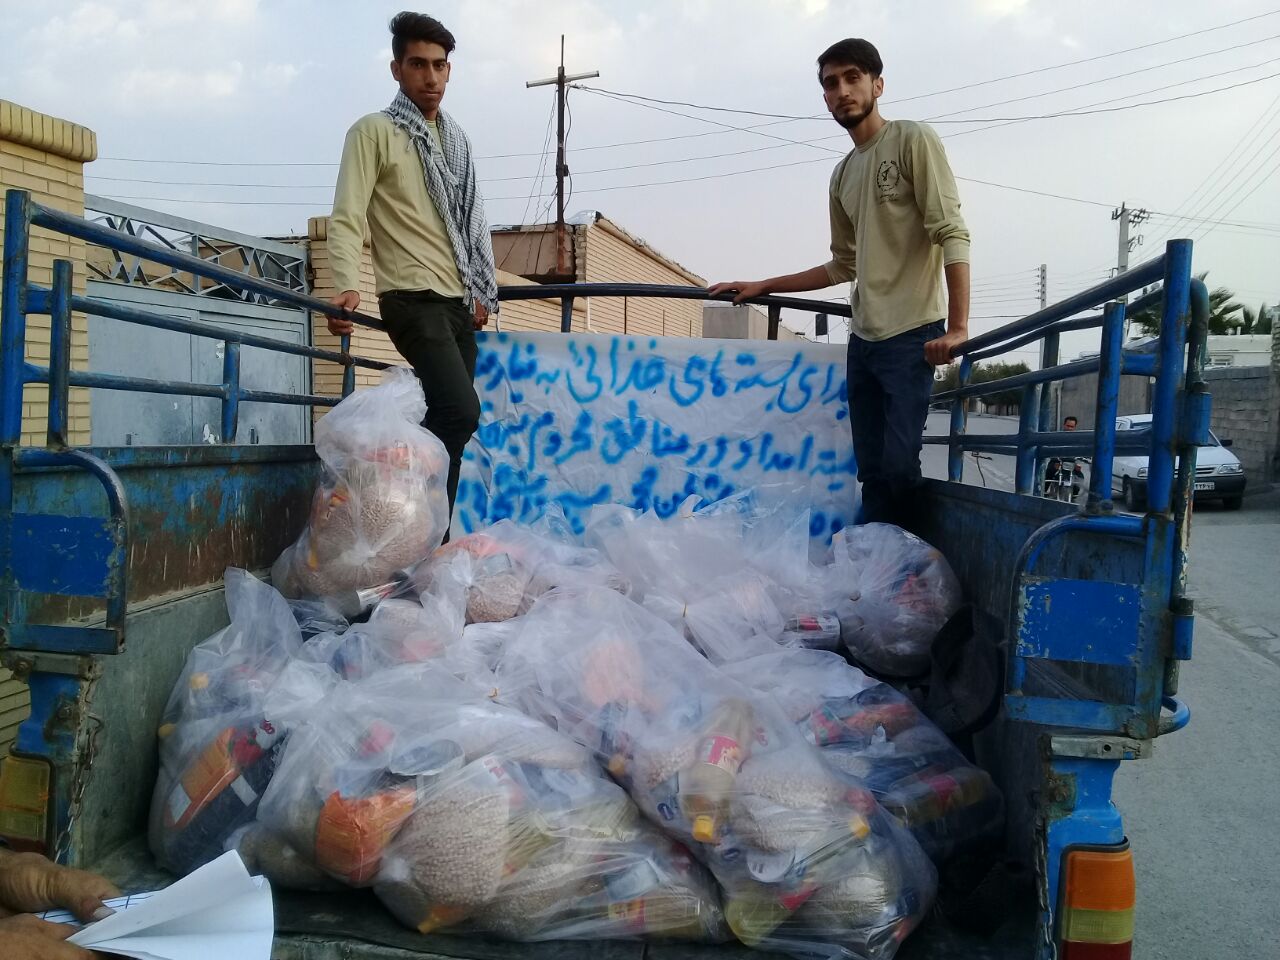 اهدای یکصد بسته مواد غذایی به مردم نیازمند توسط دانشجویان گروه جهادی شهید محسن حججی